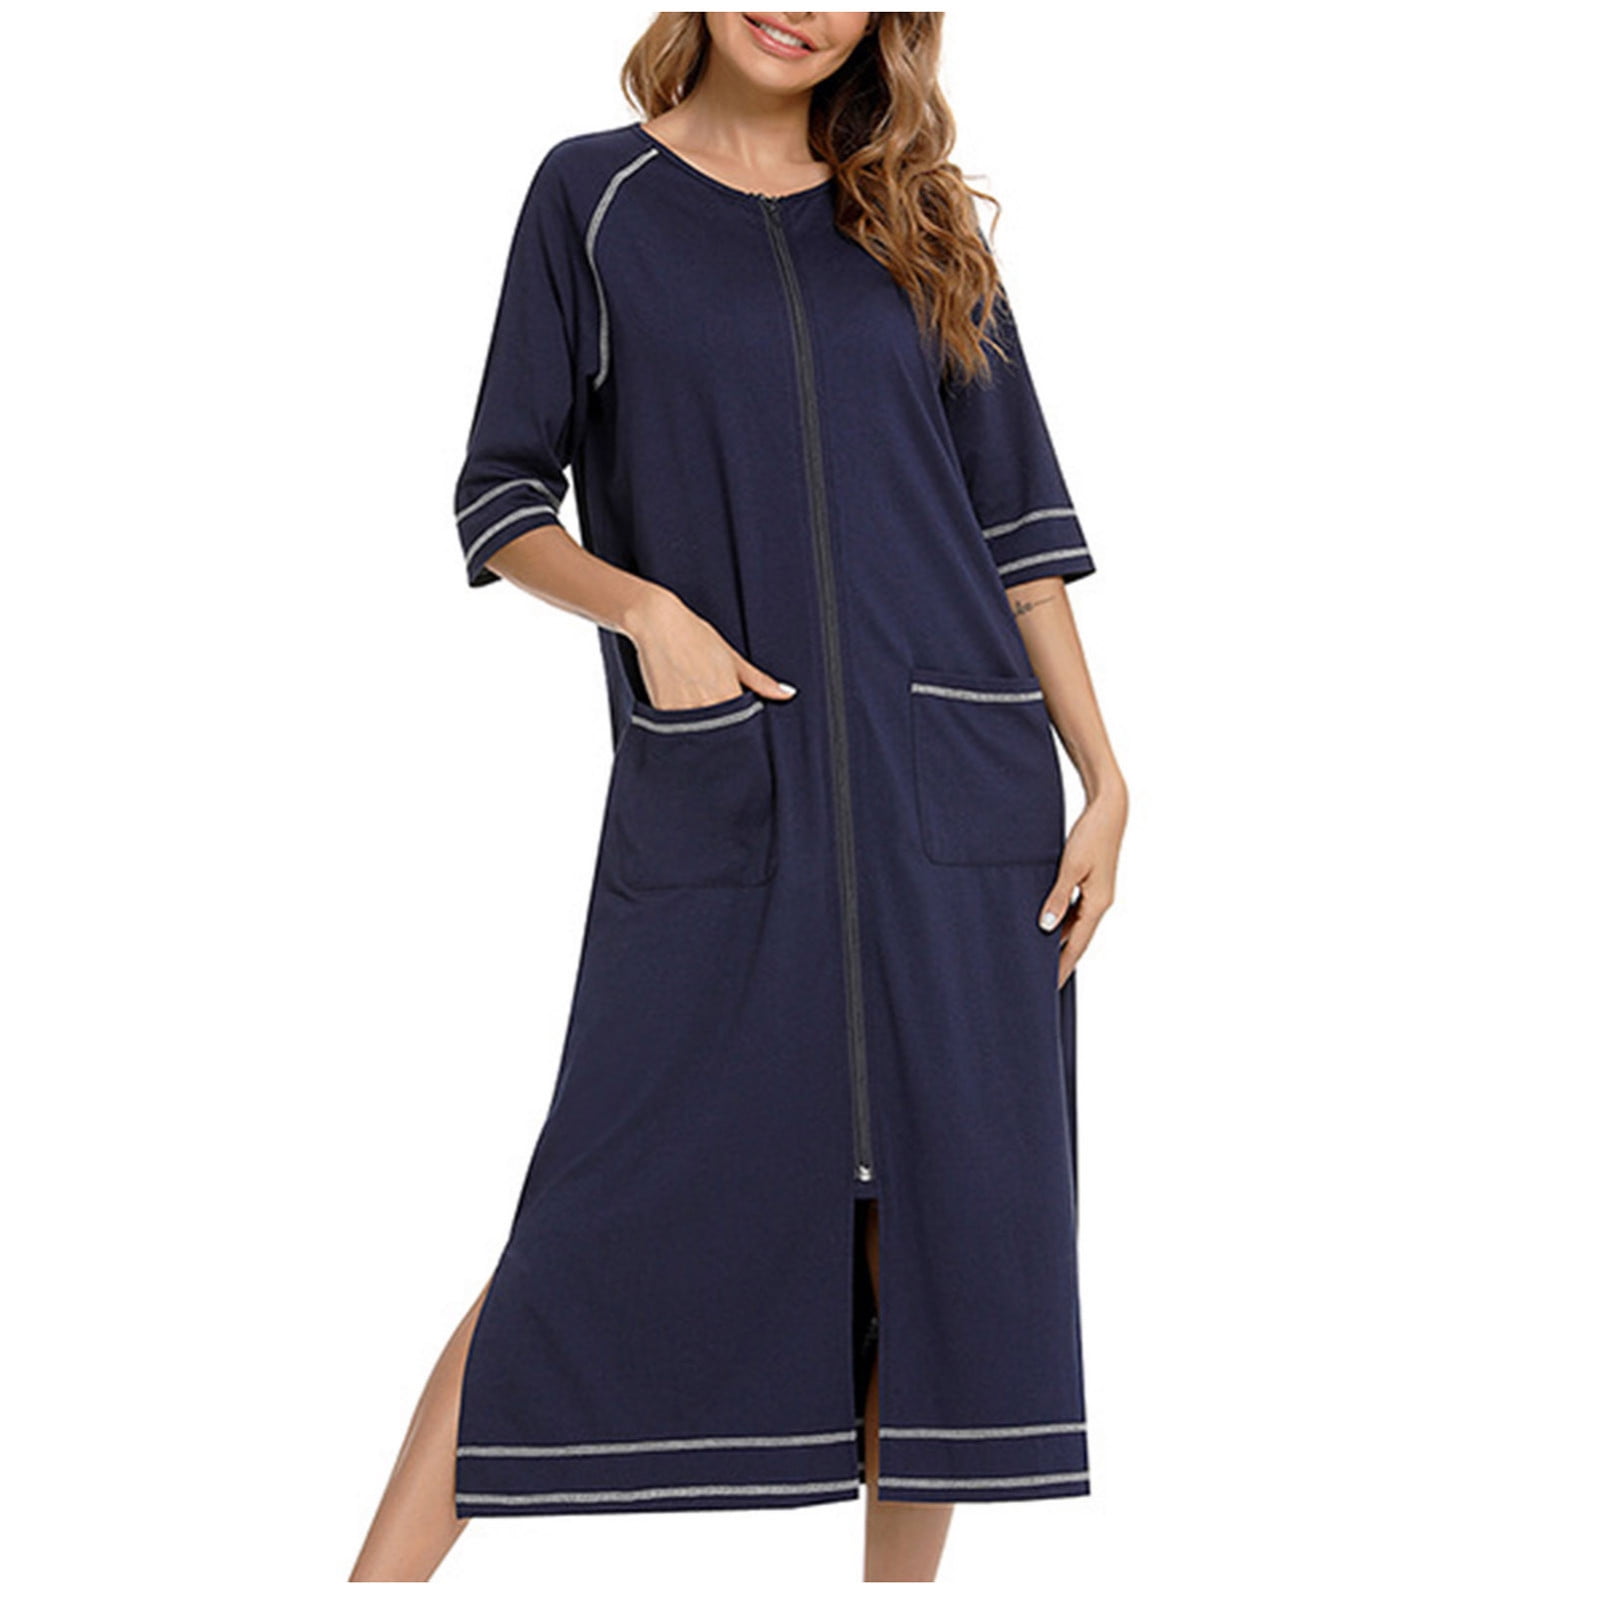 DxhmoneyHX Nightgowns for Women Zipper Robe 3/4 Sleeves Loungewear ...